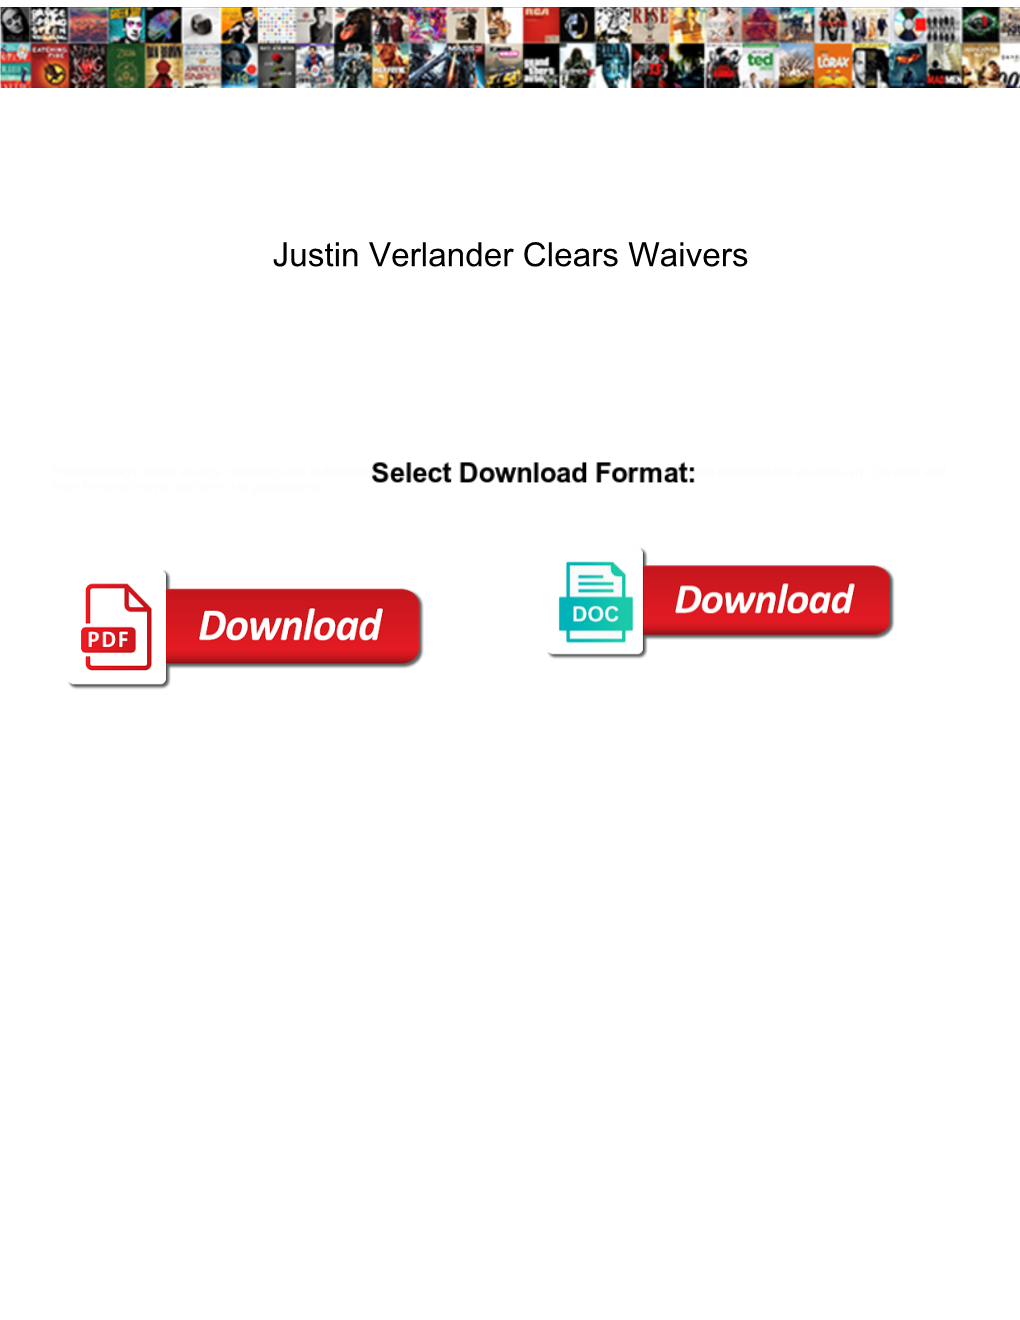 Justin Verlander Clears Waivers